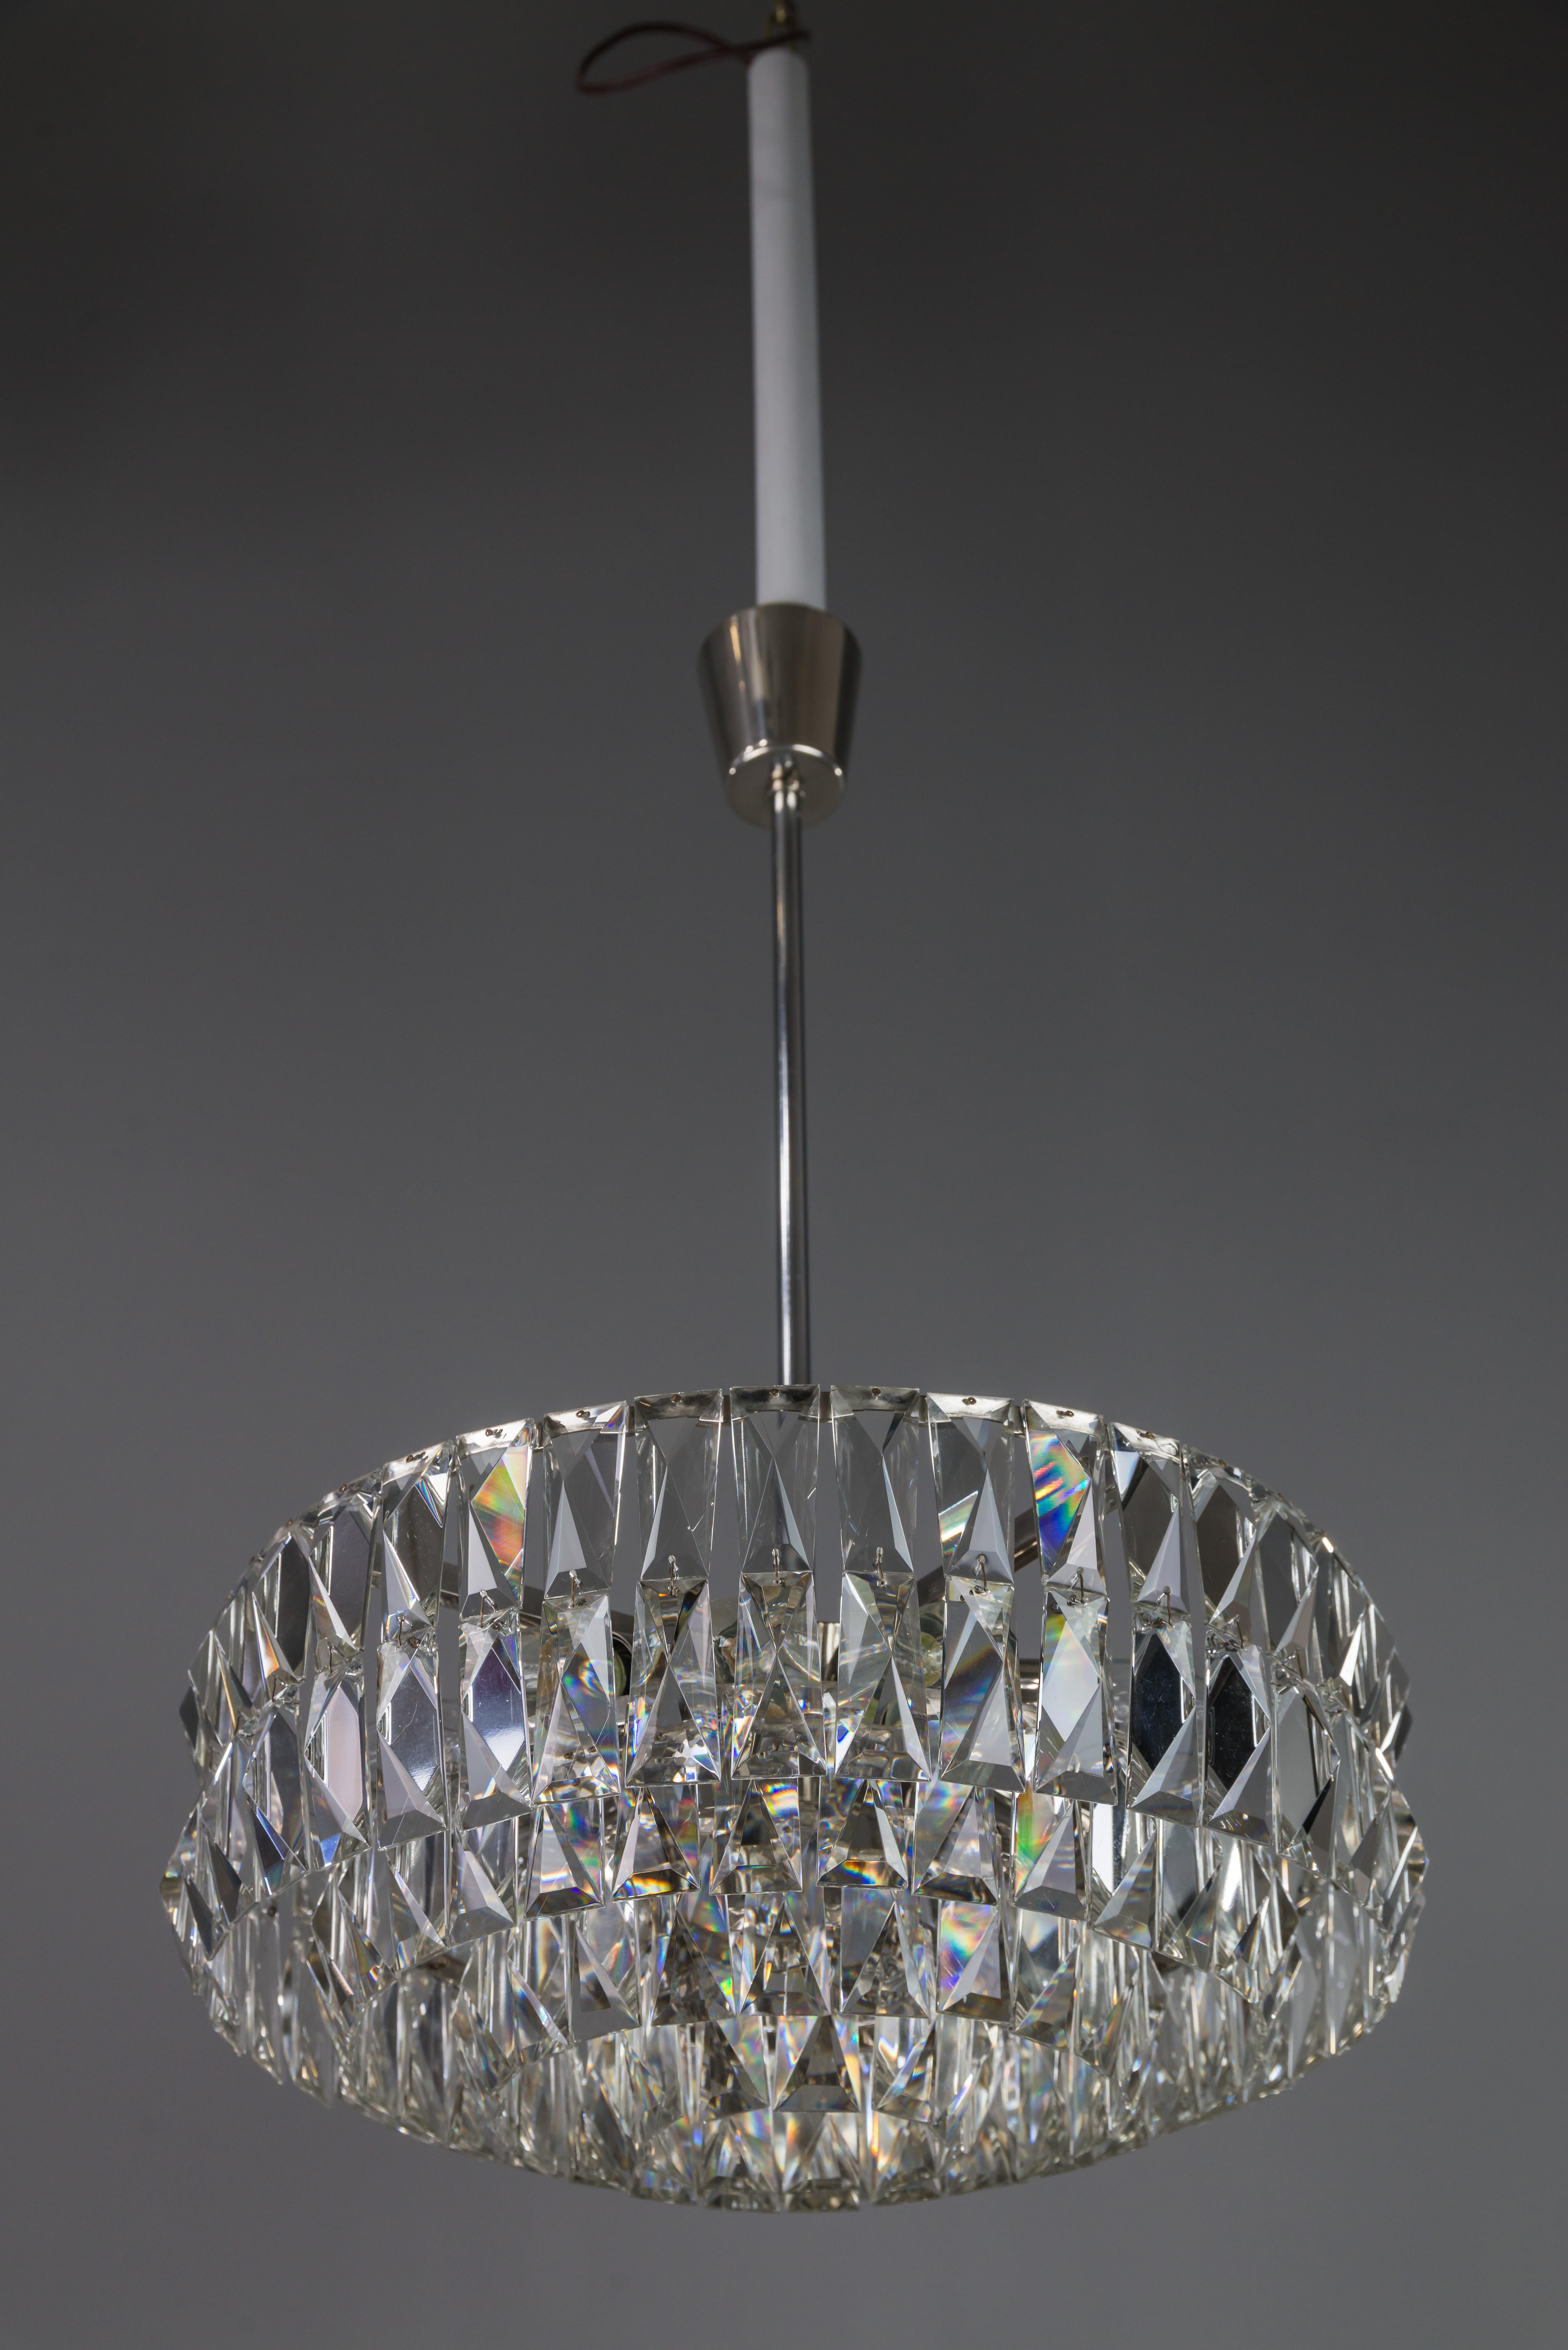 Bakalowits crystal chandelier, circa 1960s
Original condition.